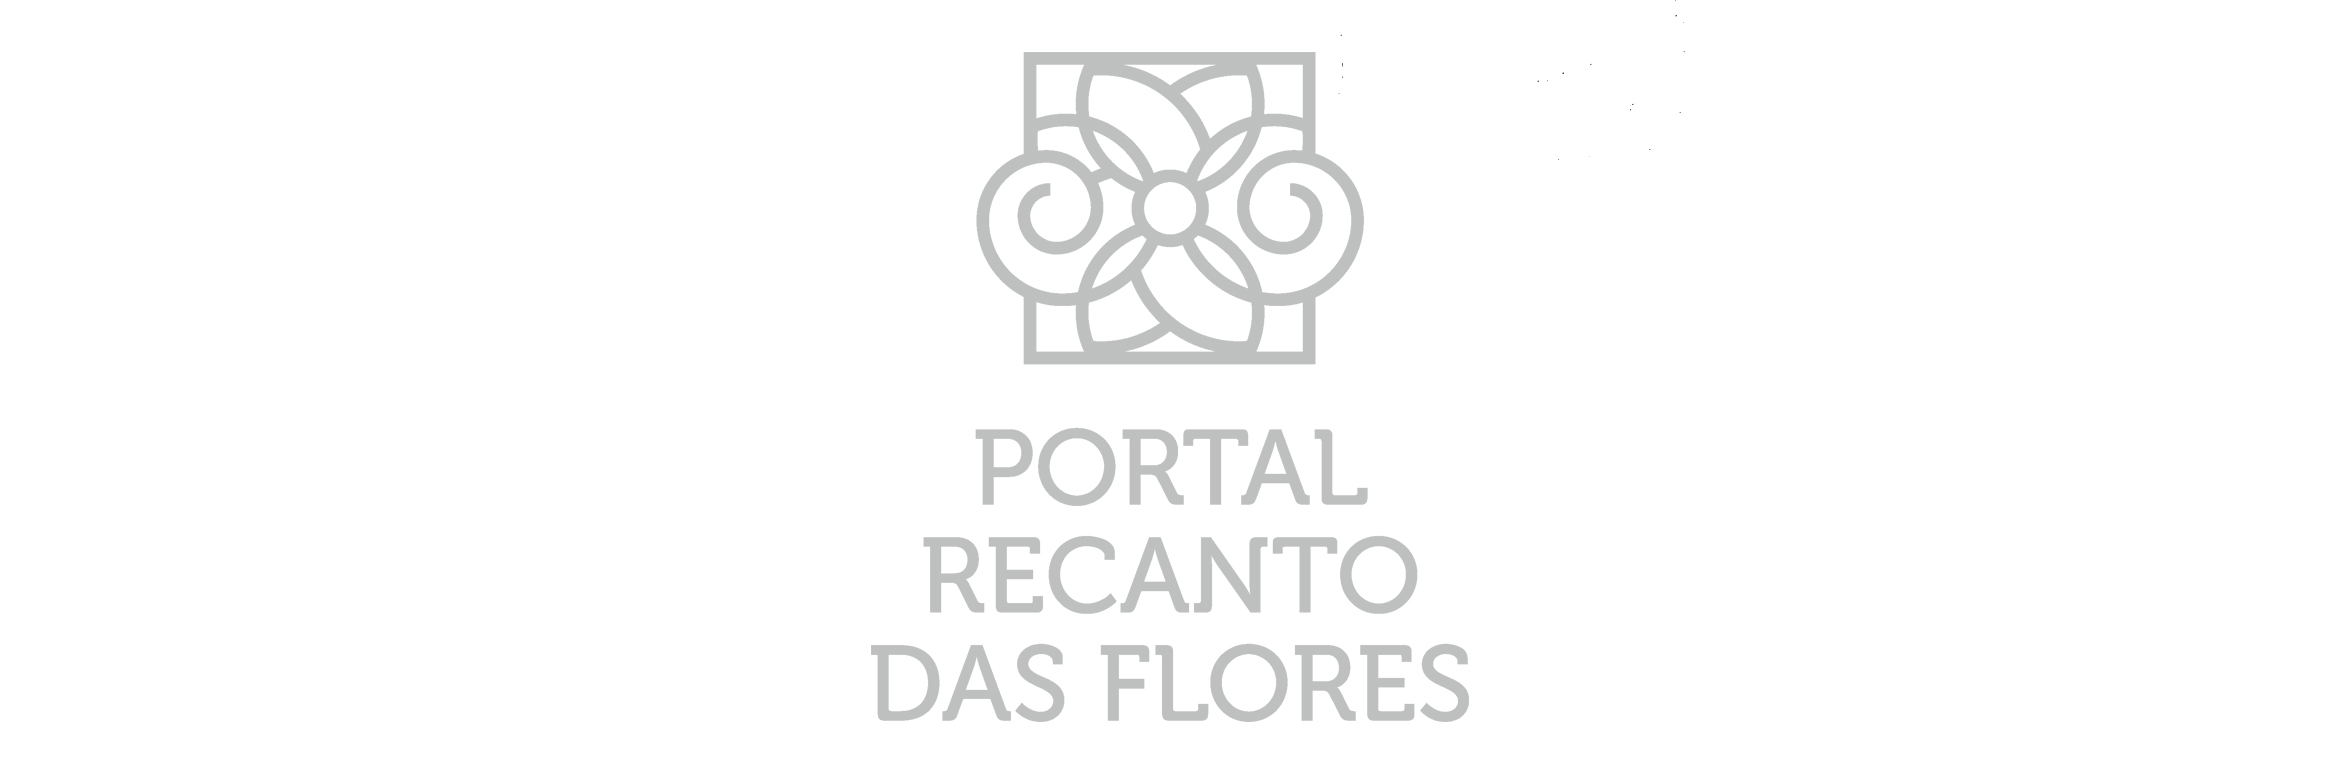 Residencial Portal Recanto Das Flores